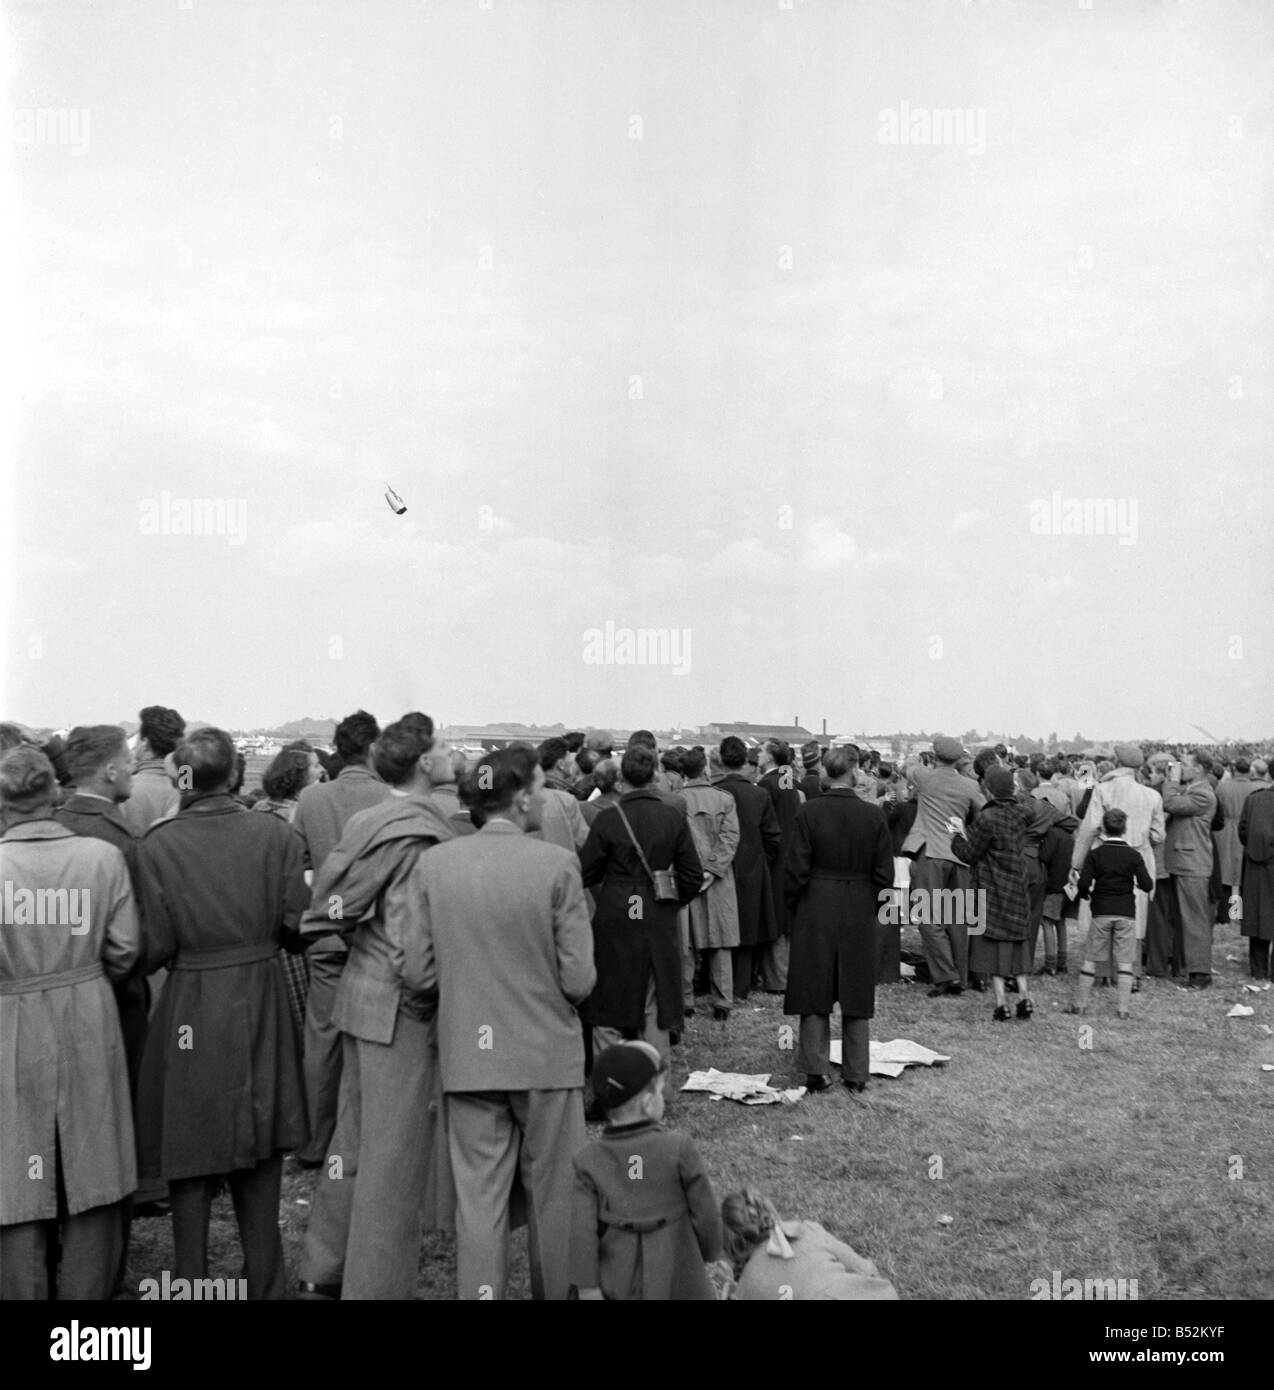 Des milliers de spectateurs ont assisté en tant que De Havilland 110 appareils ont franchi le mur du son et puis s'est désintégré dans le ciel au-dessus d'eux et est tombé à terre.;Trente et une personnes, dont John Derry pilote, ont été tués. Des dizaines d'autres ont été blessés à l'aéronautique de Farnborough Hampshire le 6 septembre 1952.;John Derry est devenu le premier pilote britannique à briser le mur du son, au cours d'une tentative de record exactement quatre ans avant l'accident. Septembre 1952 C4399 Banque D'Images